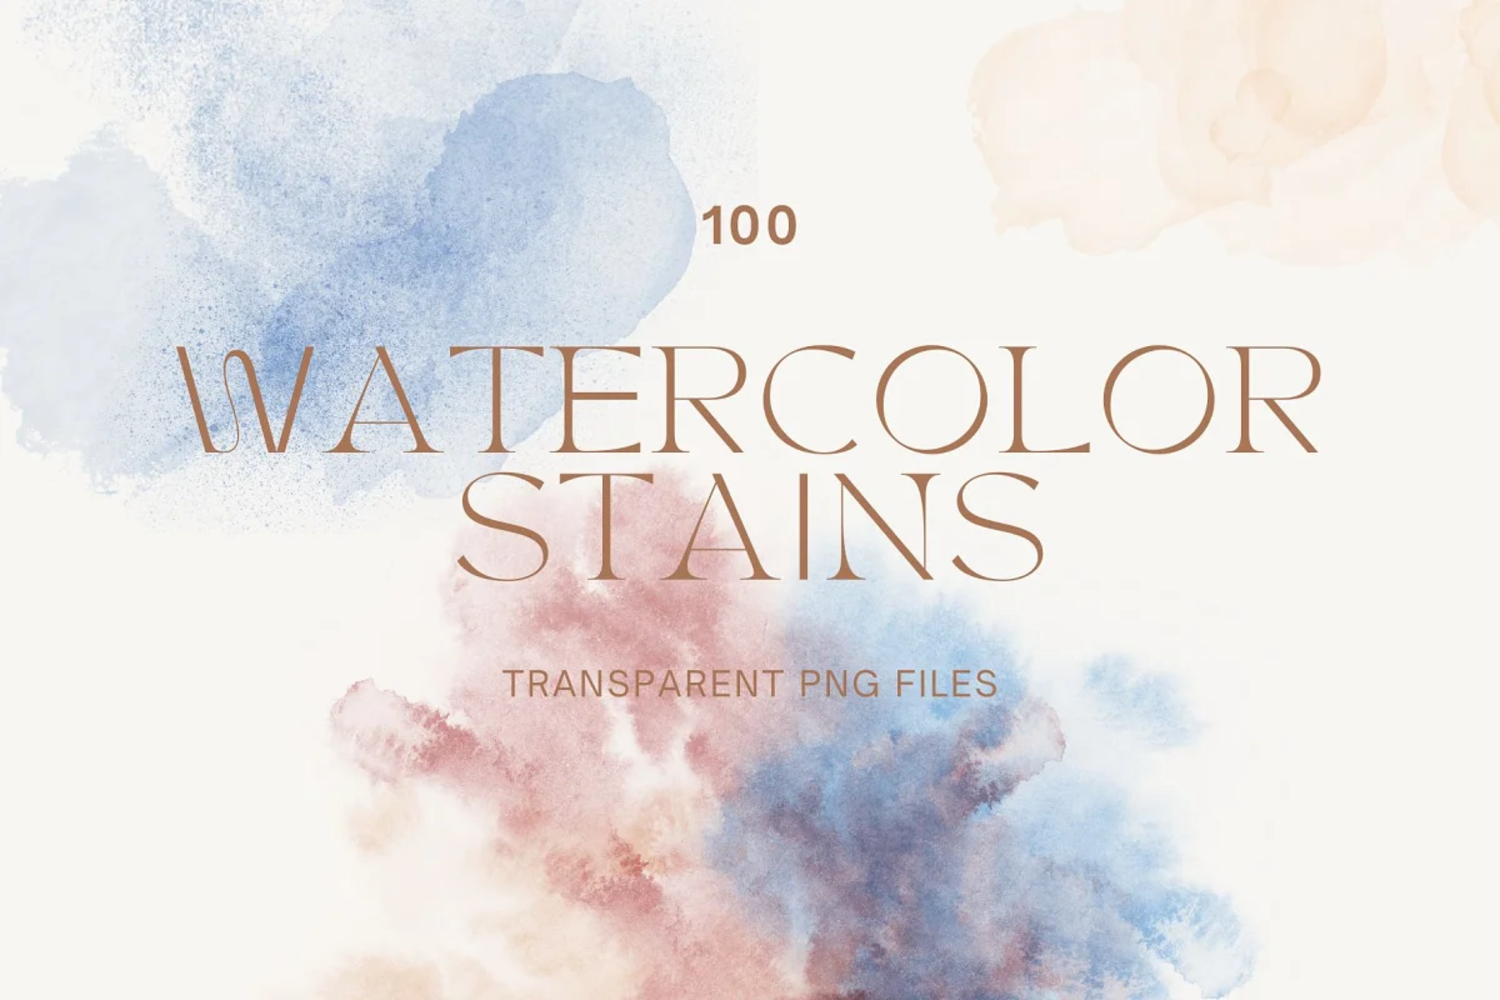 5317 各种颜色的水彩污渍纹理背景图片素材-100 Watercolor Abstract Stains@GOOODME.COM